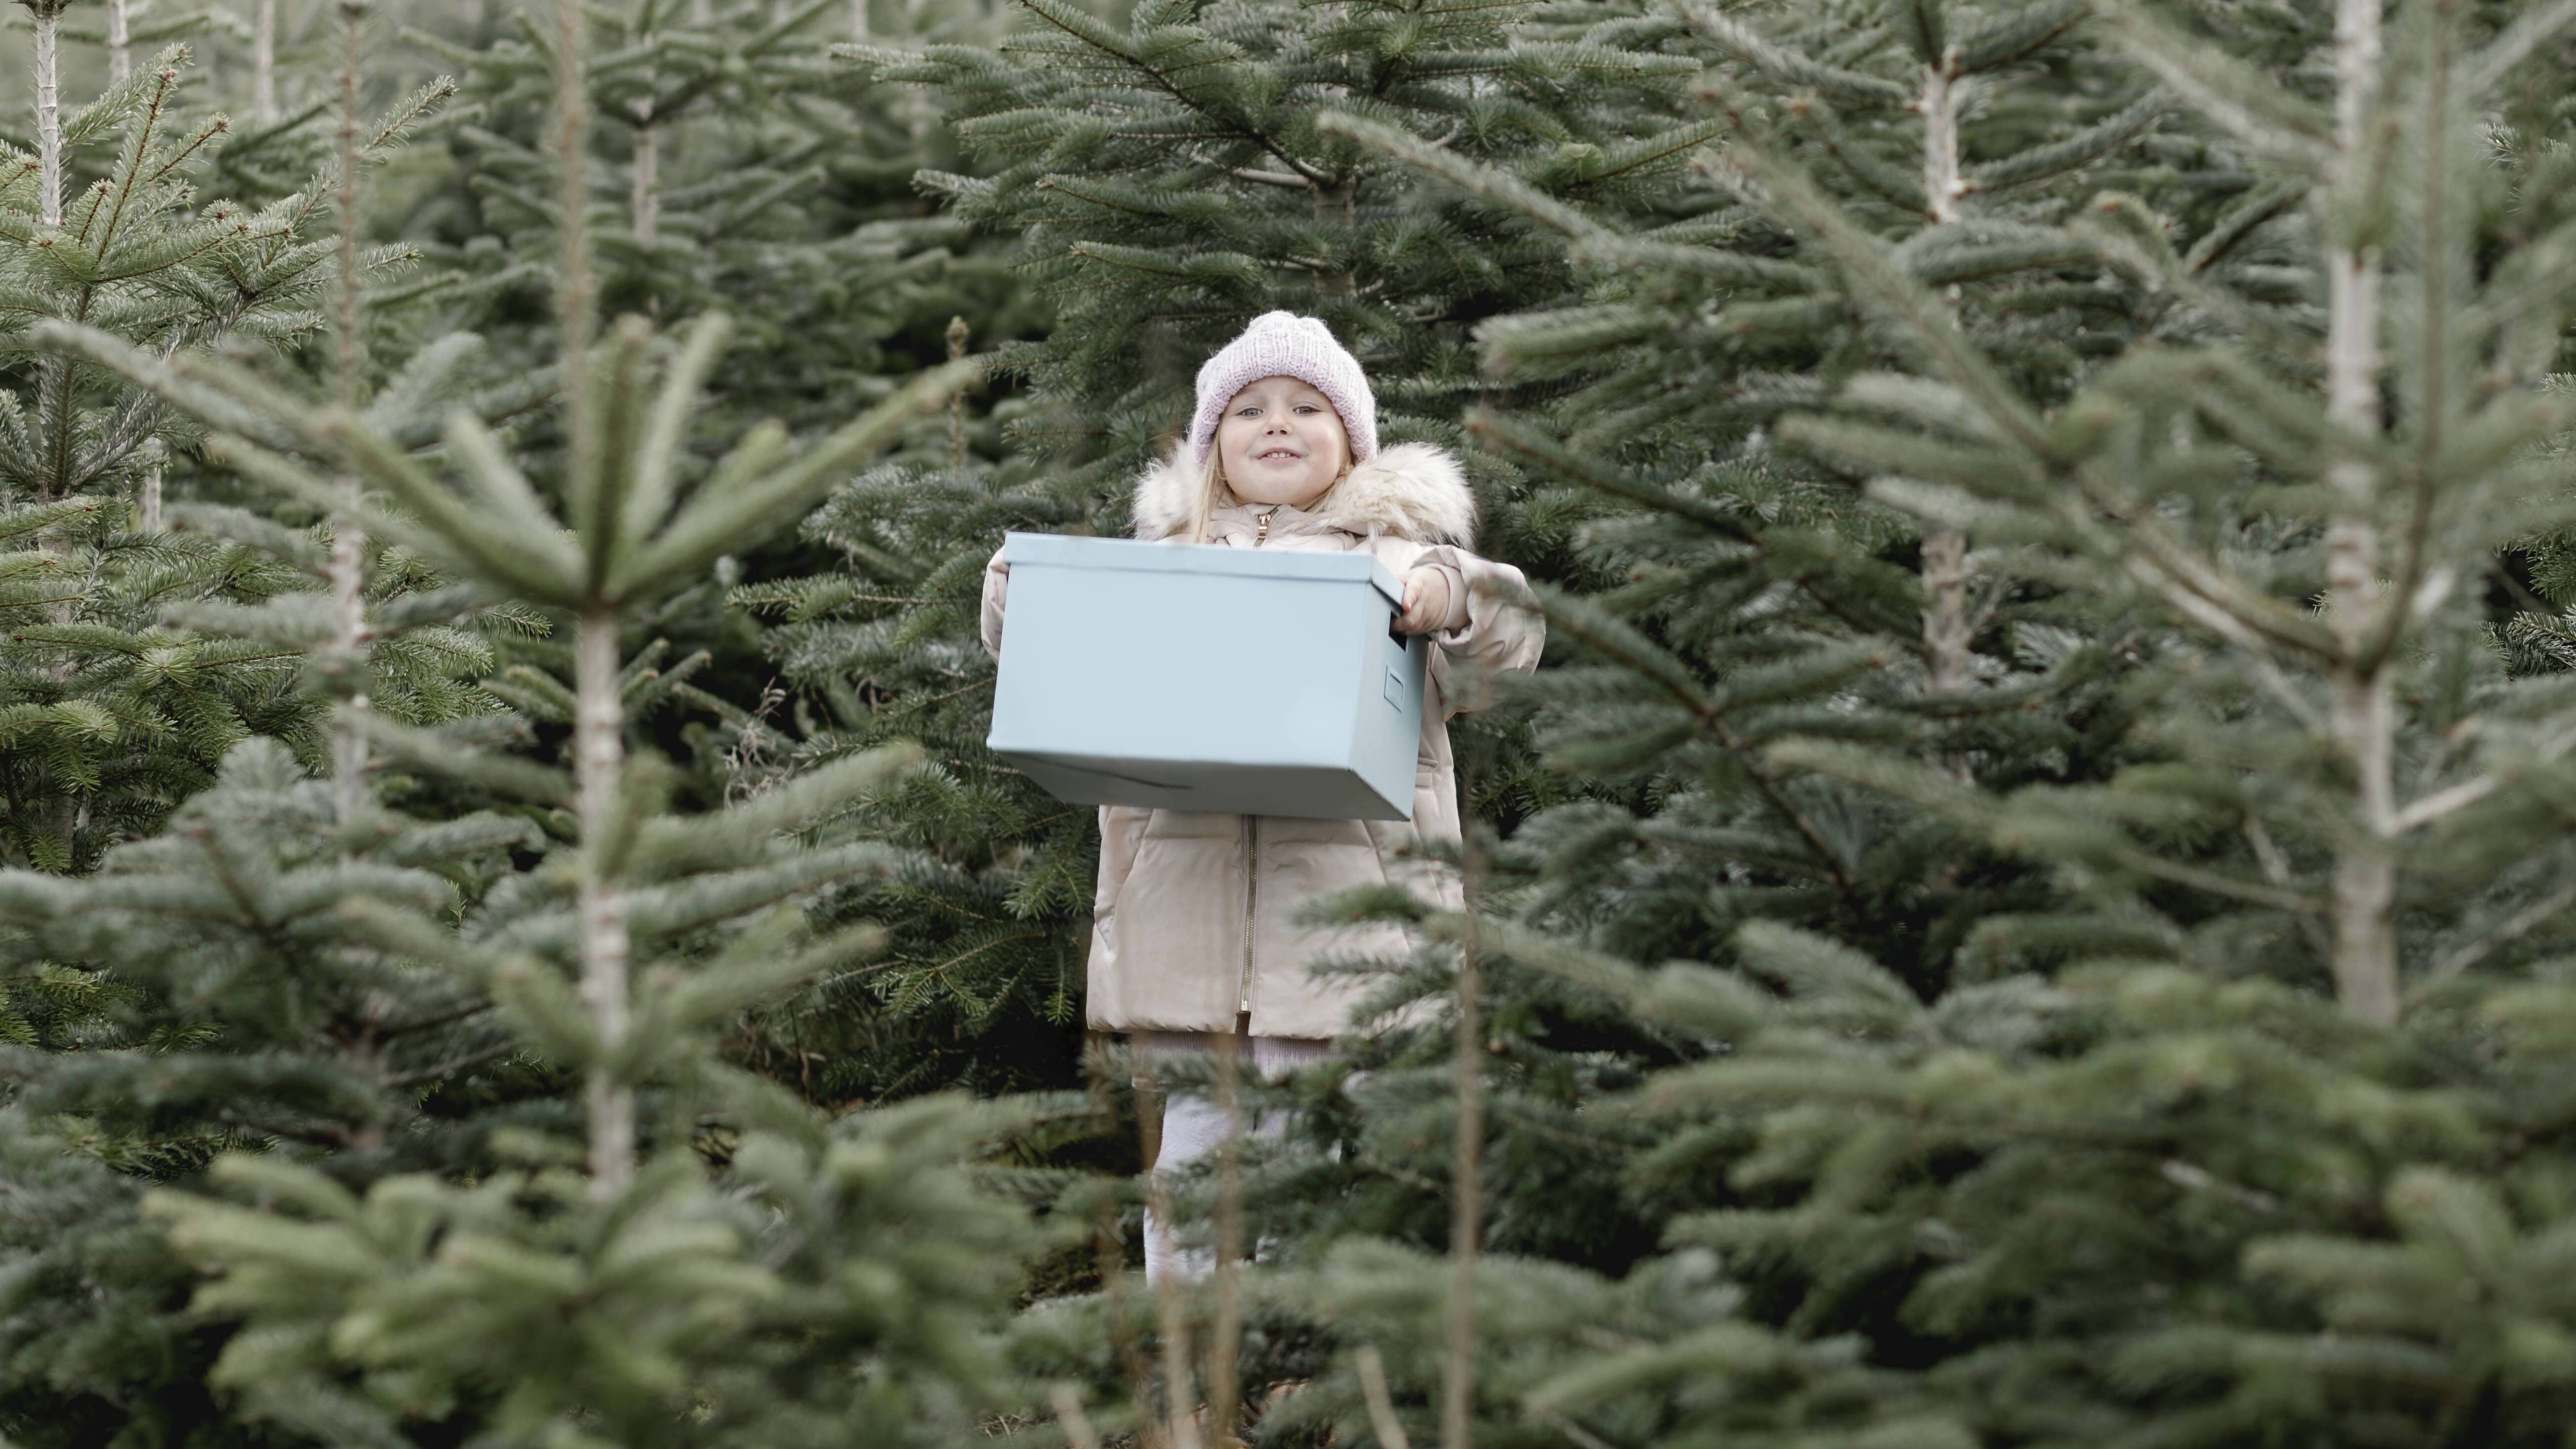 Strahlendes Mädchen mit einer Kiste steht inmitten eines Tannenbaum-Schonung